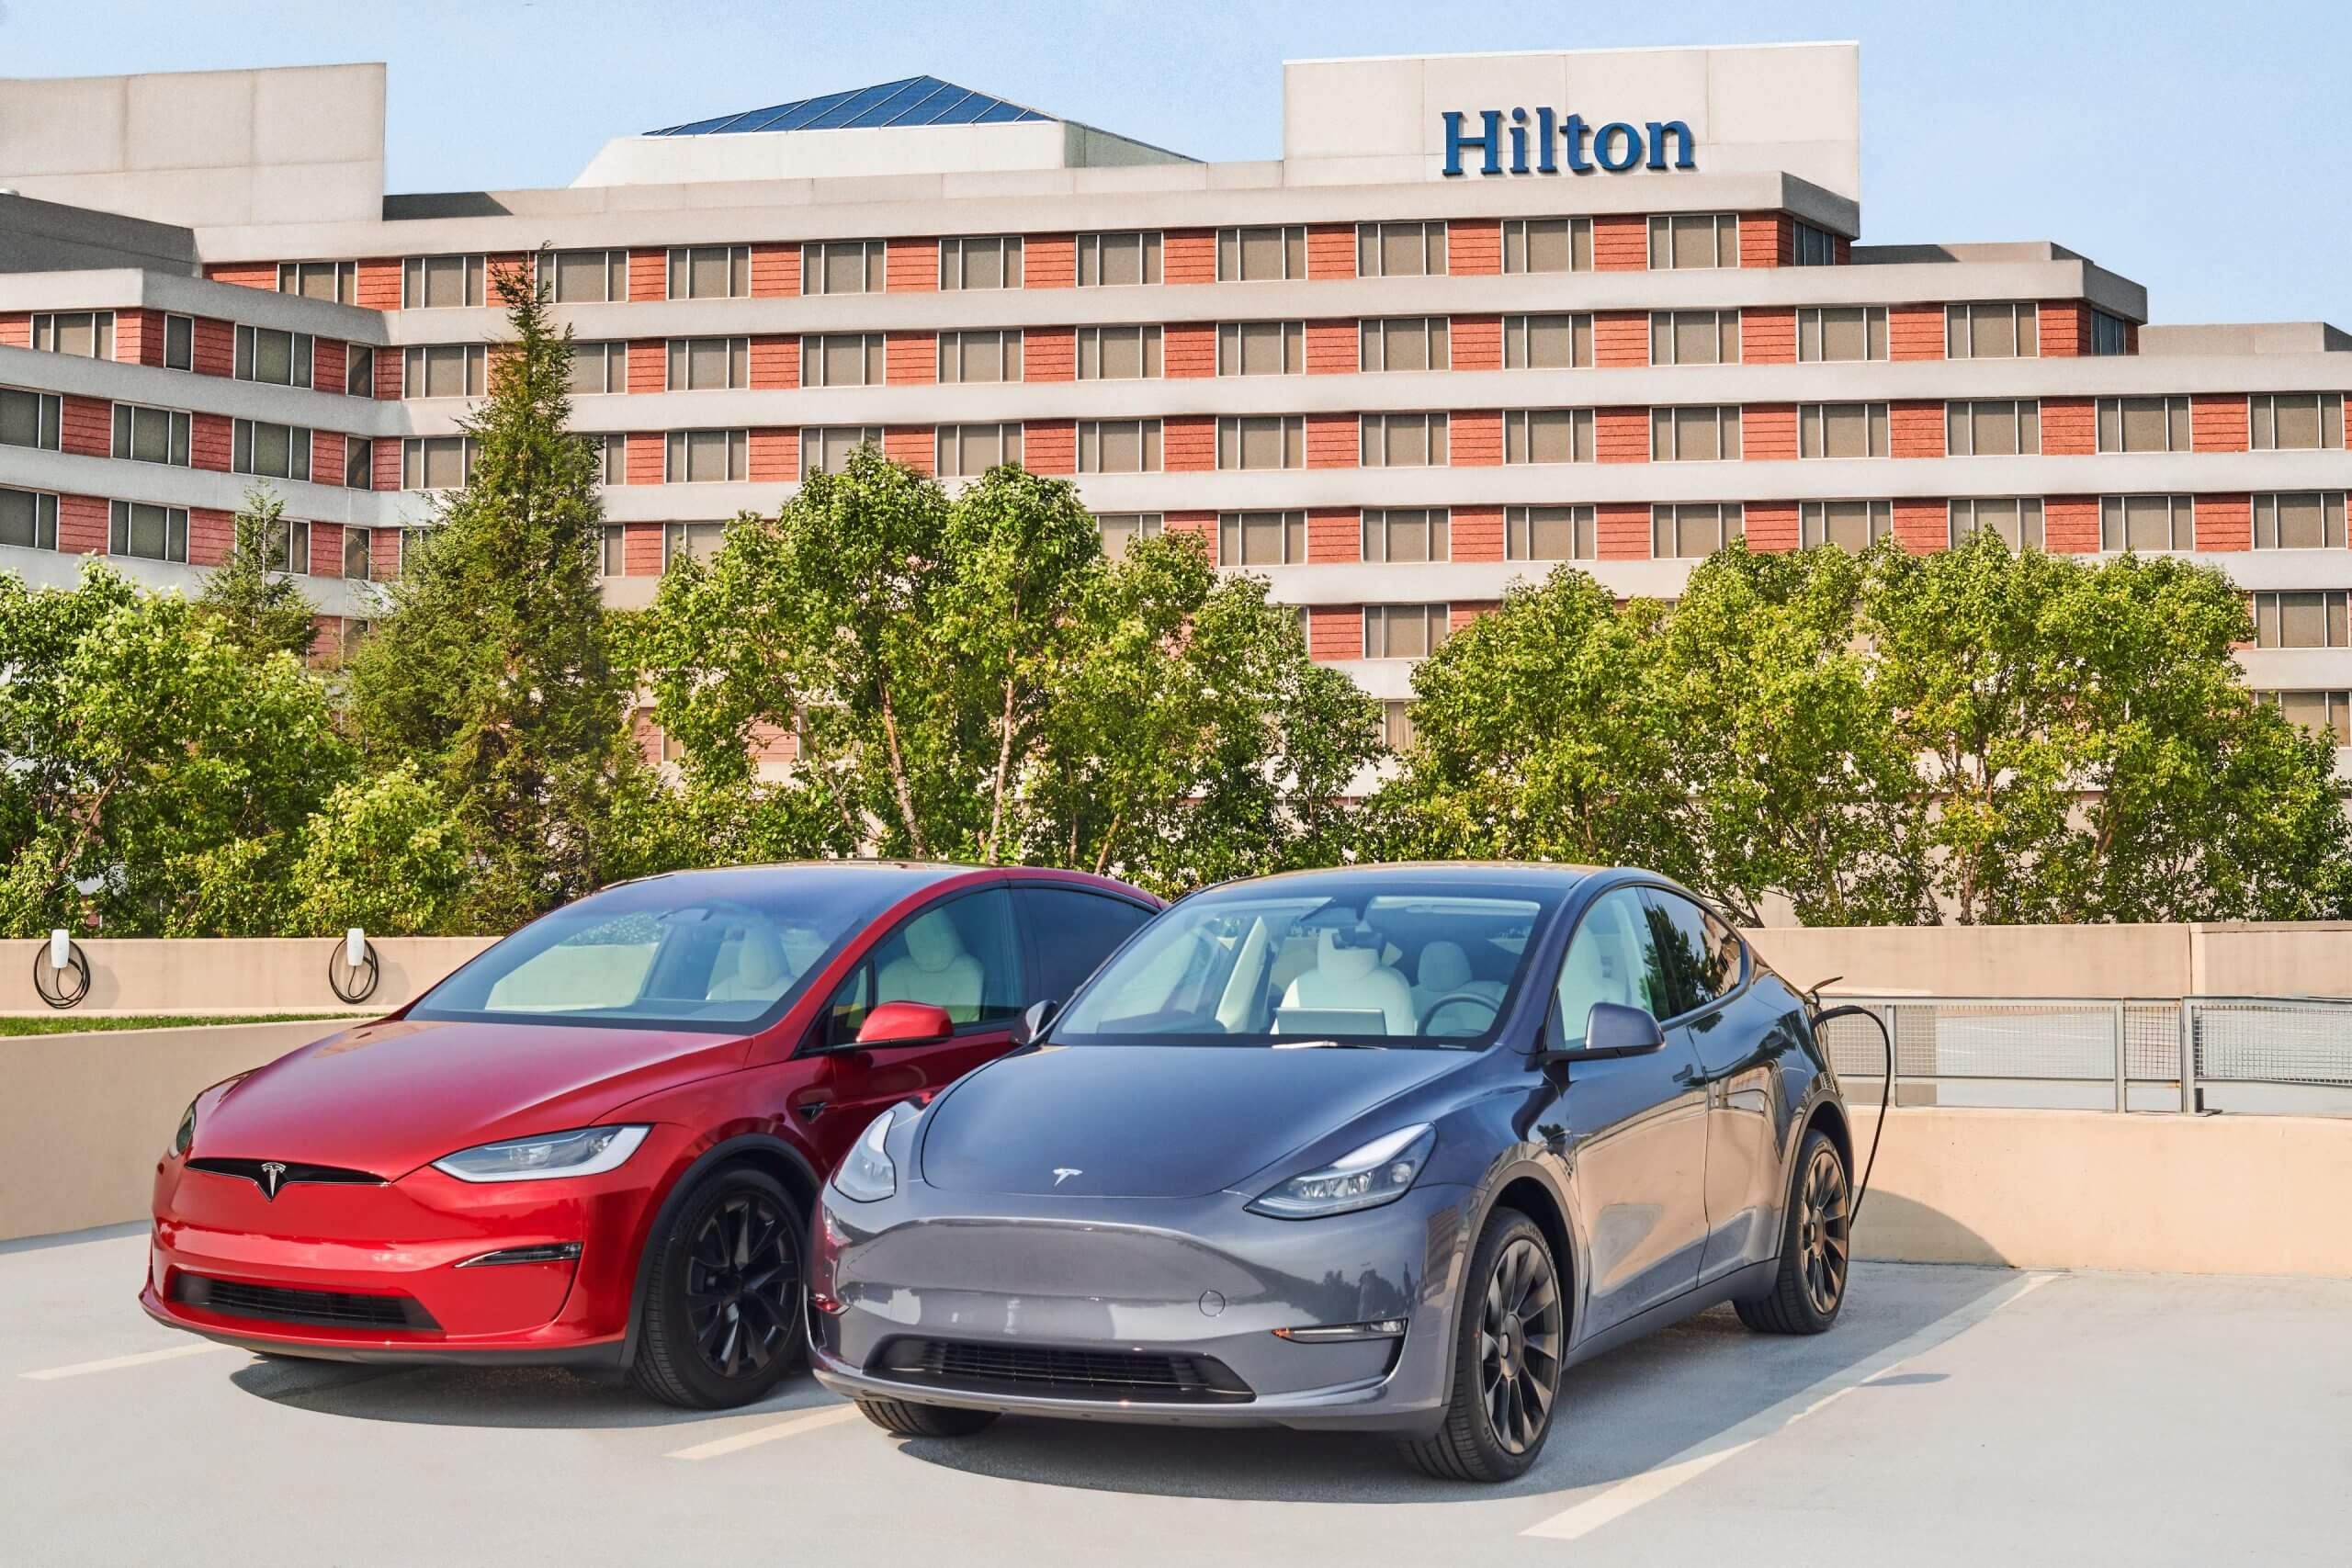 Jusqu’à 20 000 connecteurs muraux universels Tesla seront installés sur 2 000 sites Hilton